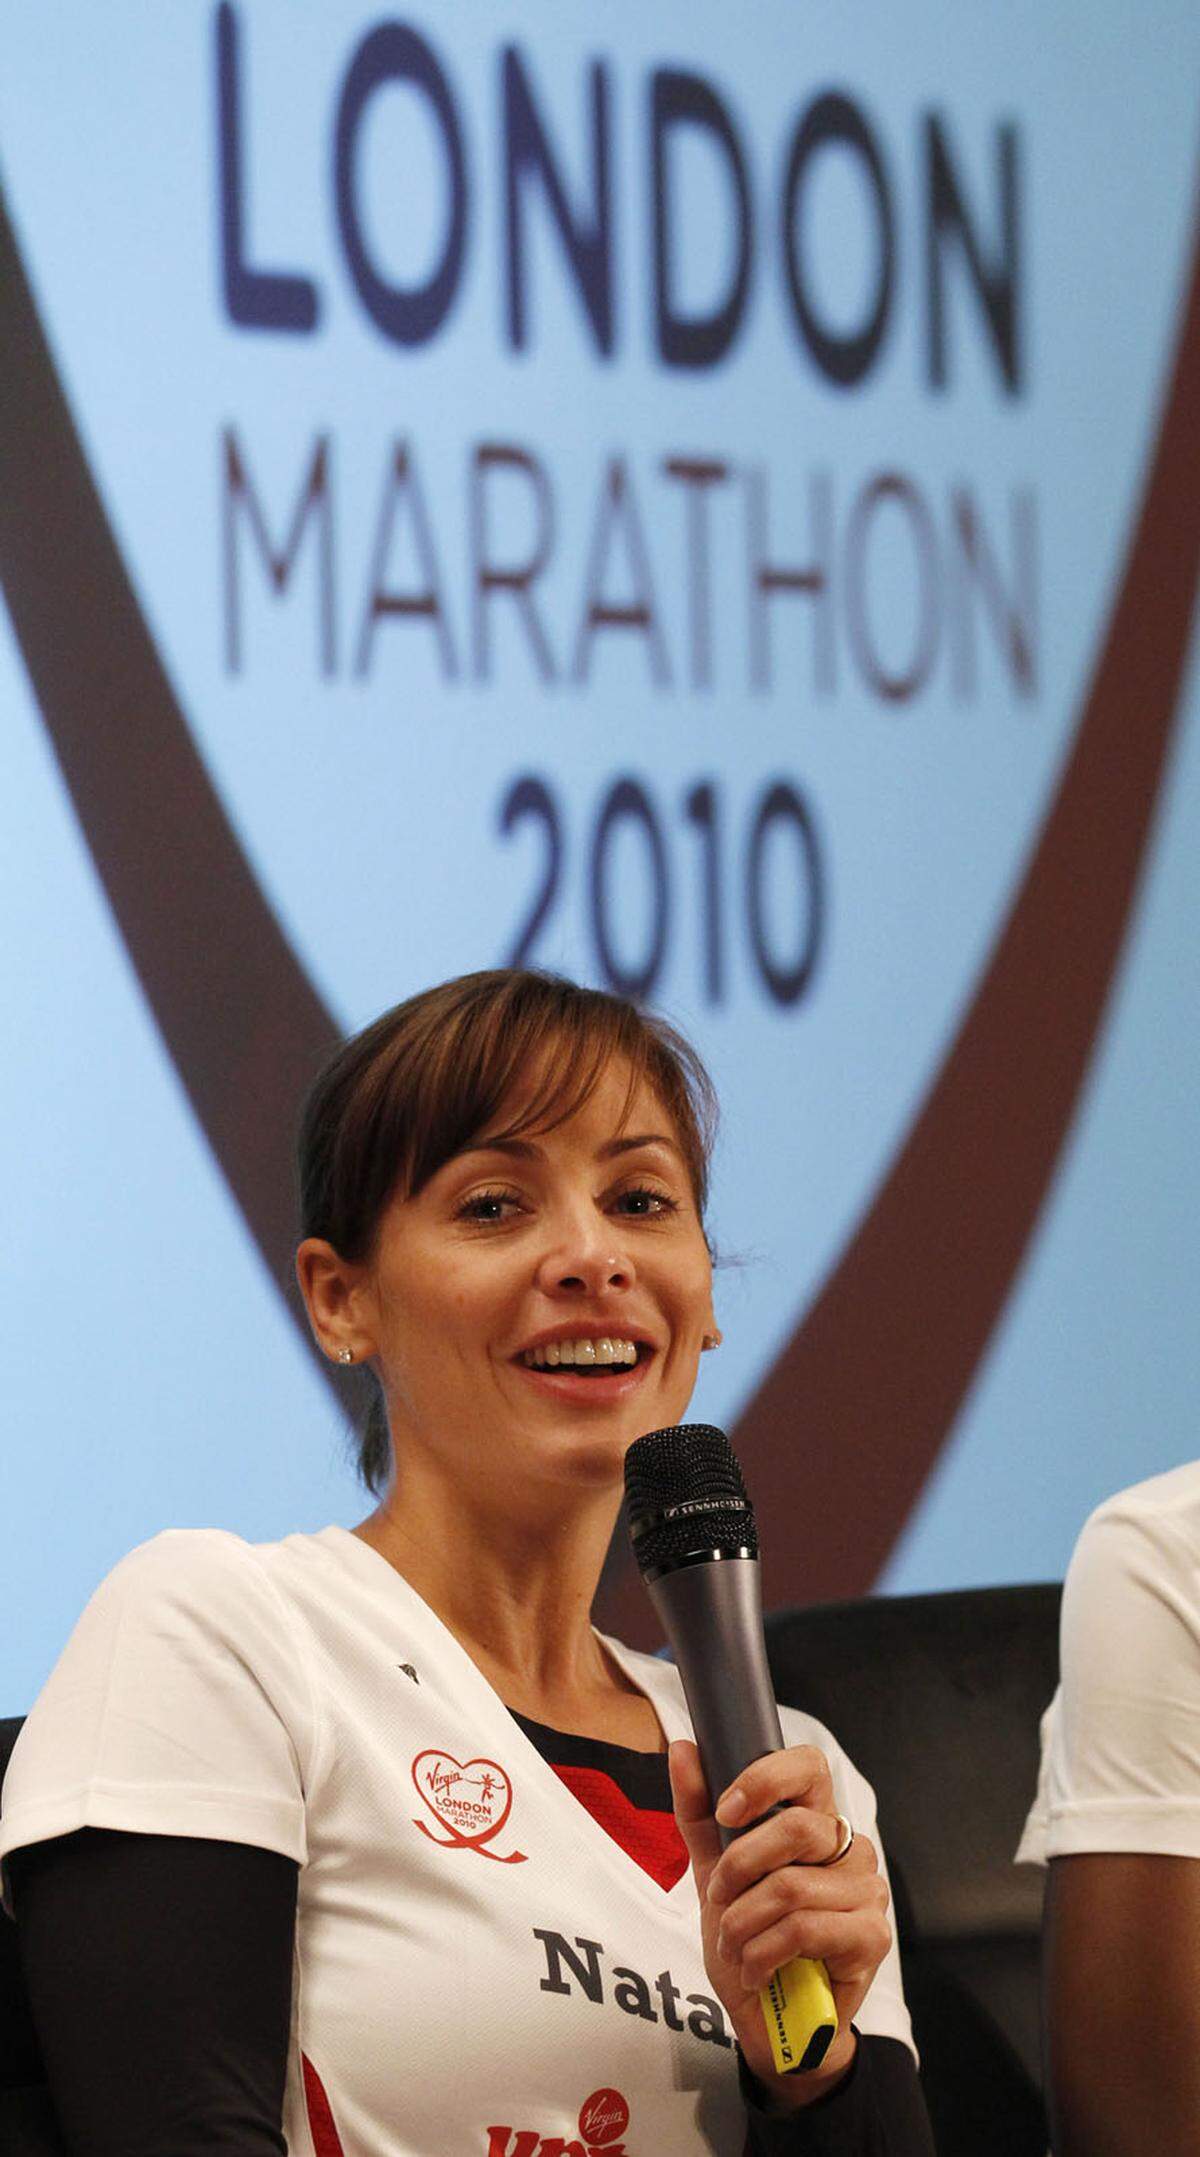 Natalie Imbruglia betrachtet sich zwar nicht als Langstreckenläufer, aber der australische Singer-Songwriter-Star schaffte den Londoner Marathon 2010 dennoch in 5:02.